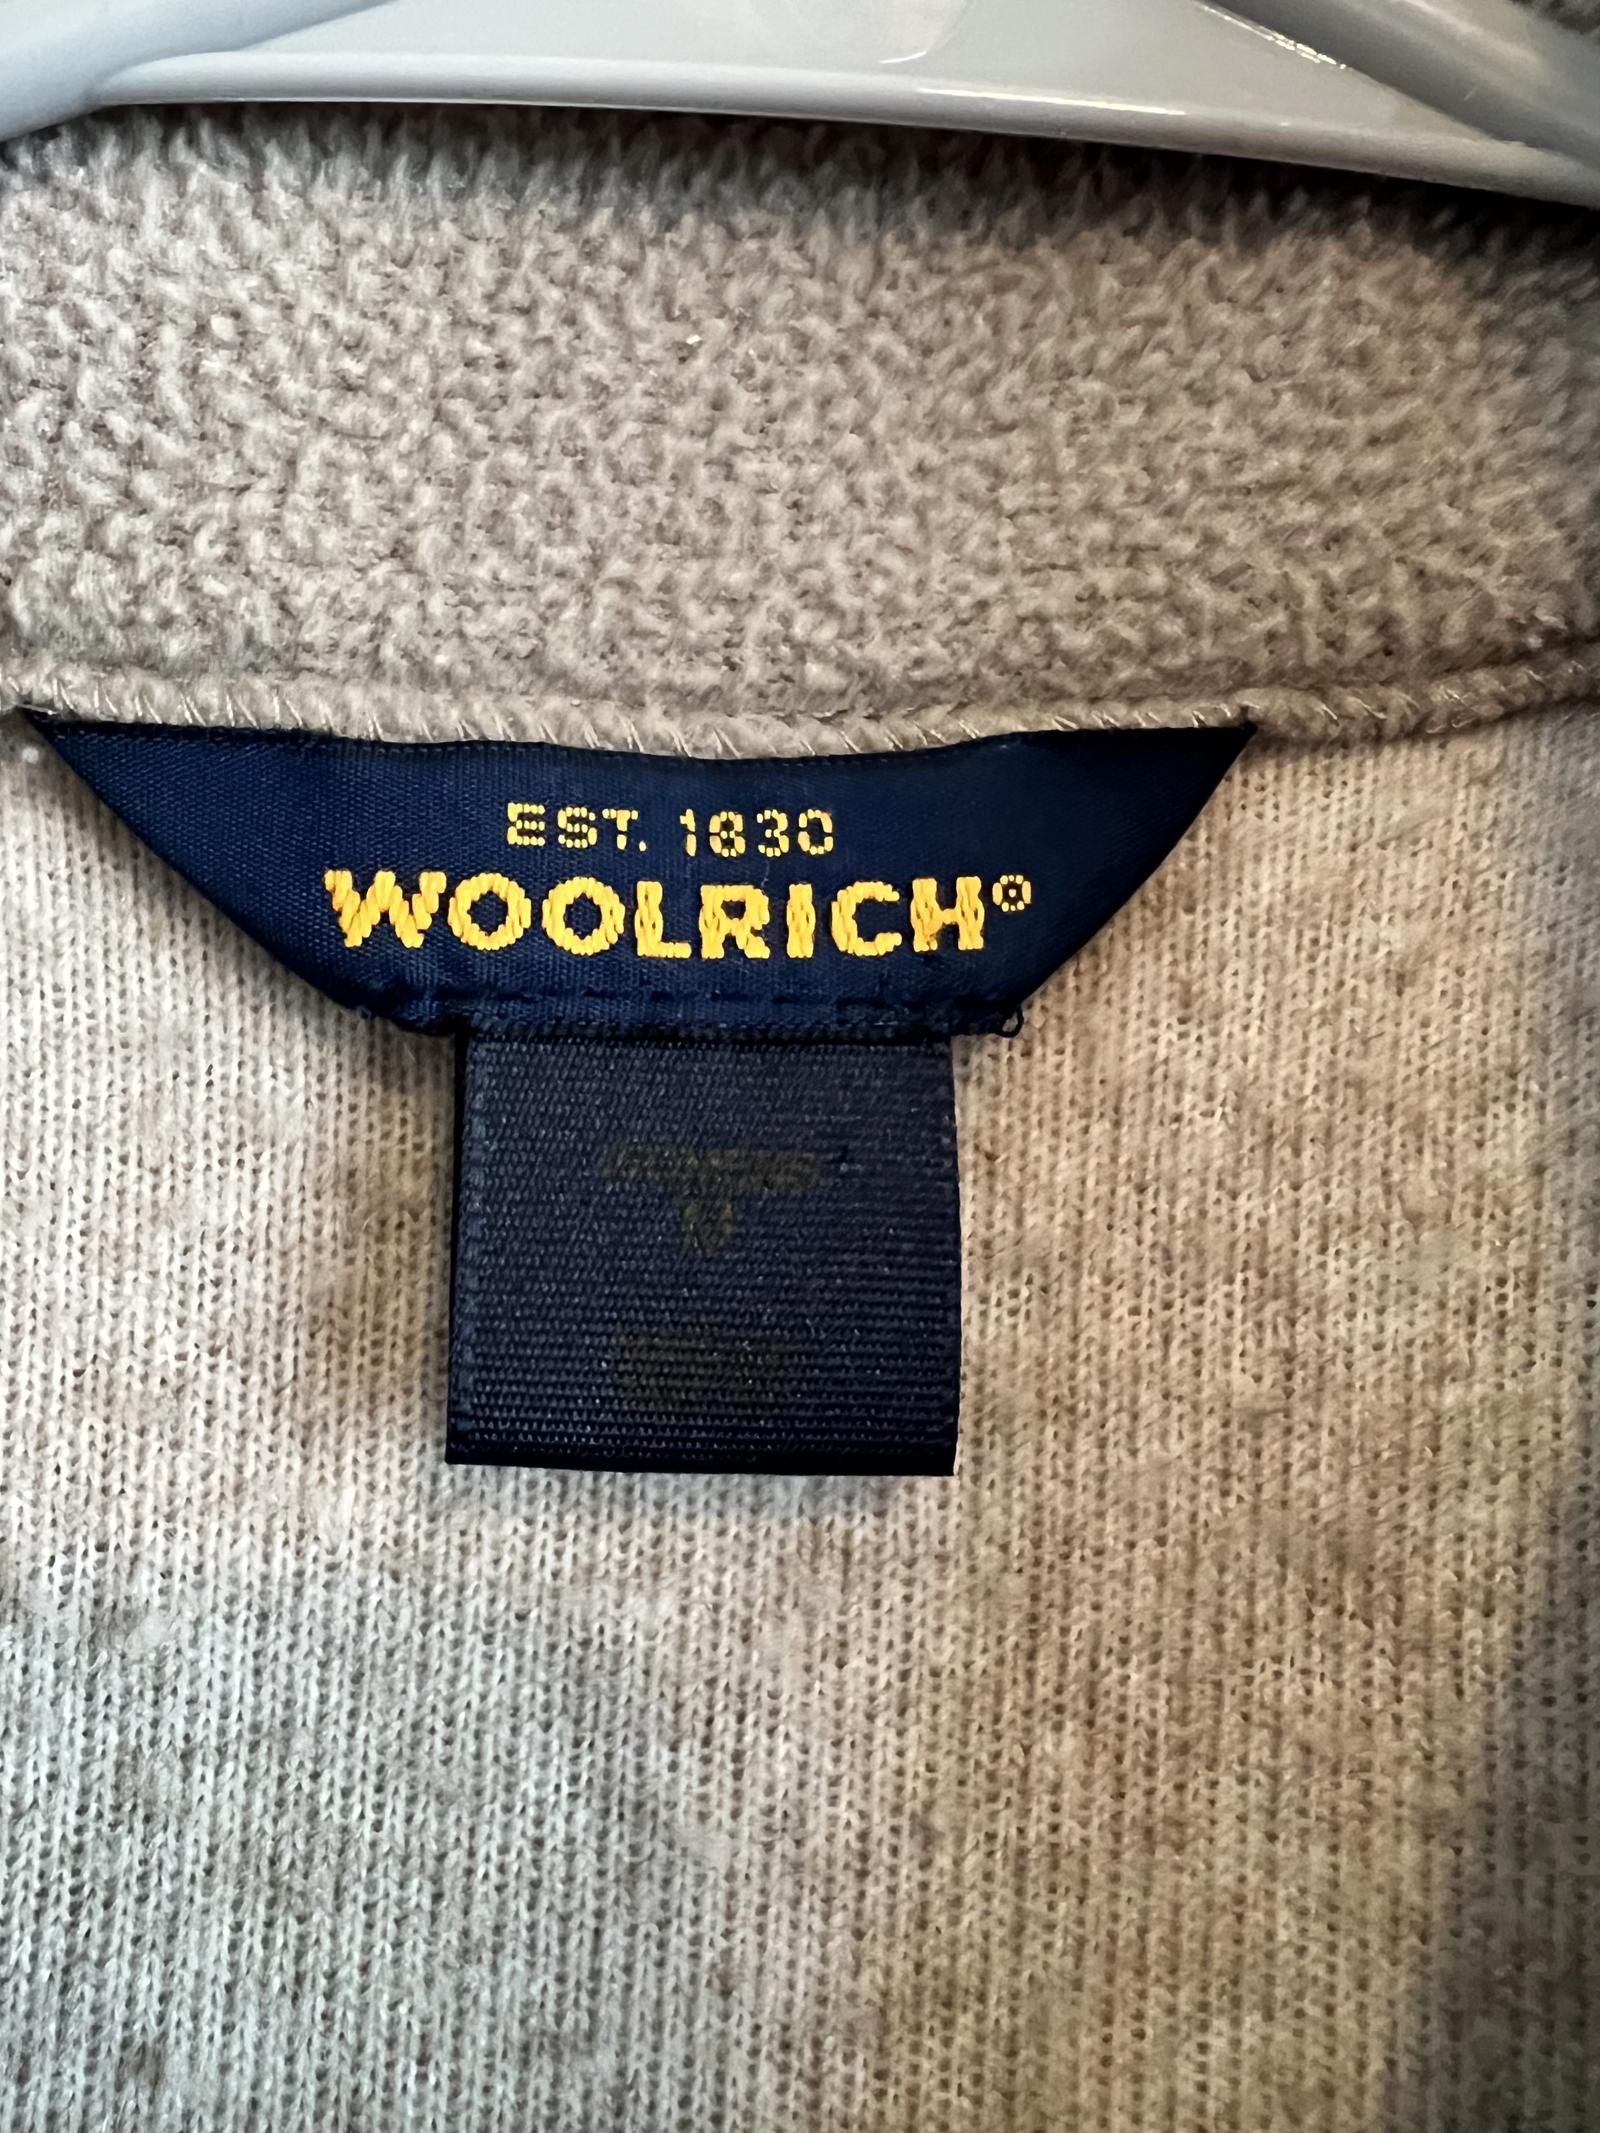 Woolrich Woolen Mills Woolrich Tan Outdoors Vest Womens Medium Size M / US 6-8 / IT 42-44 - 3 Thumbnail